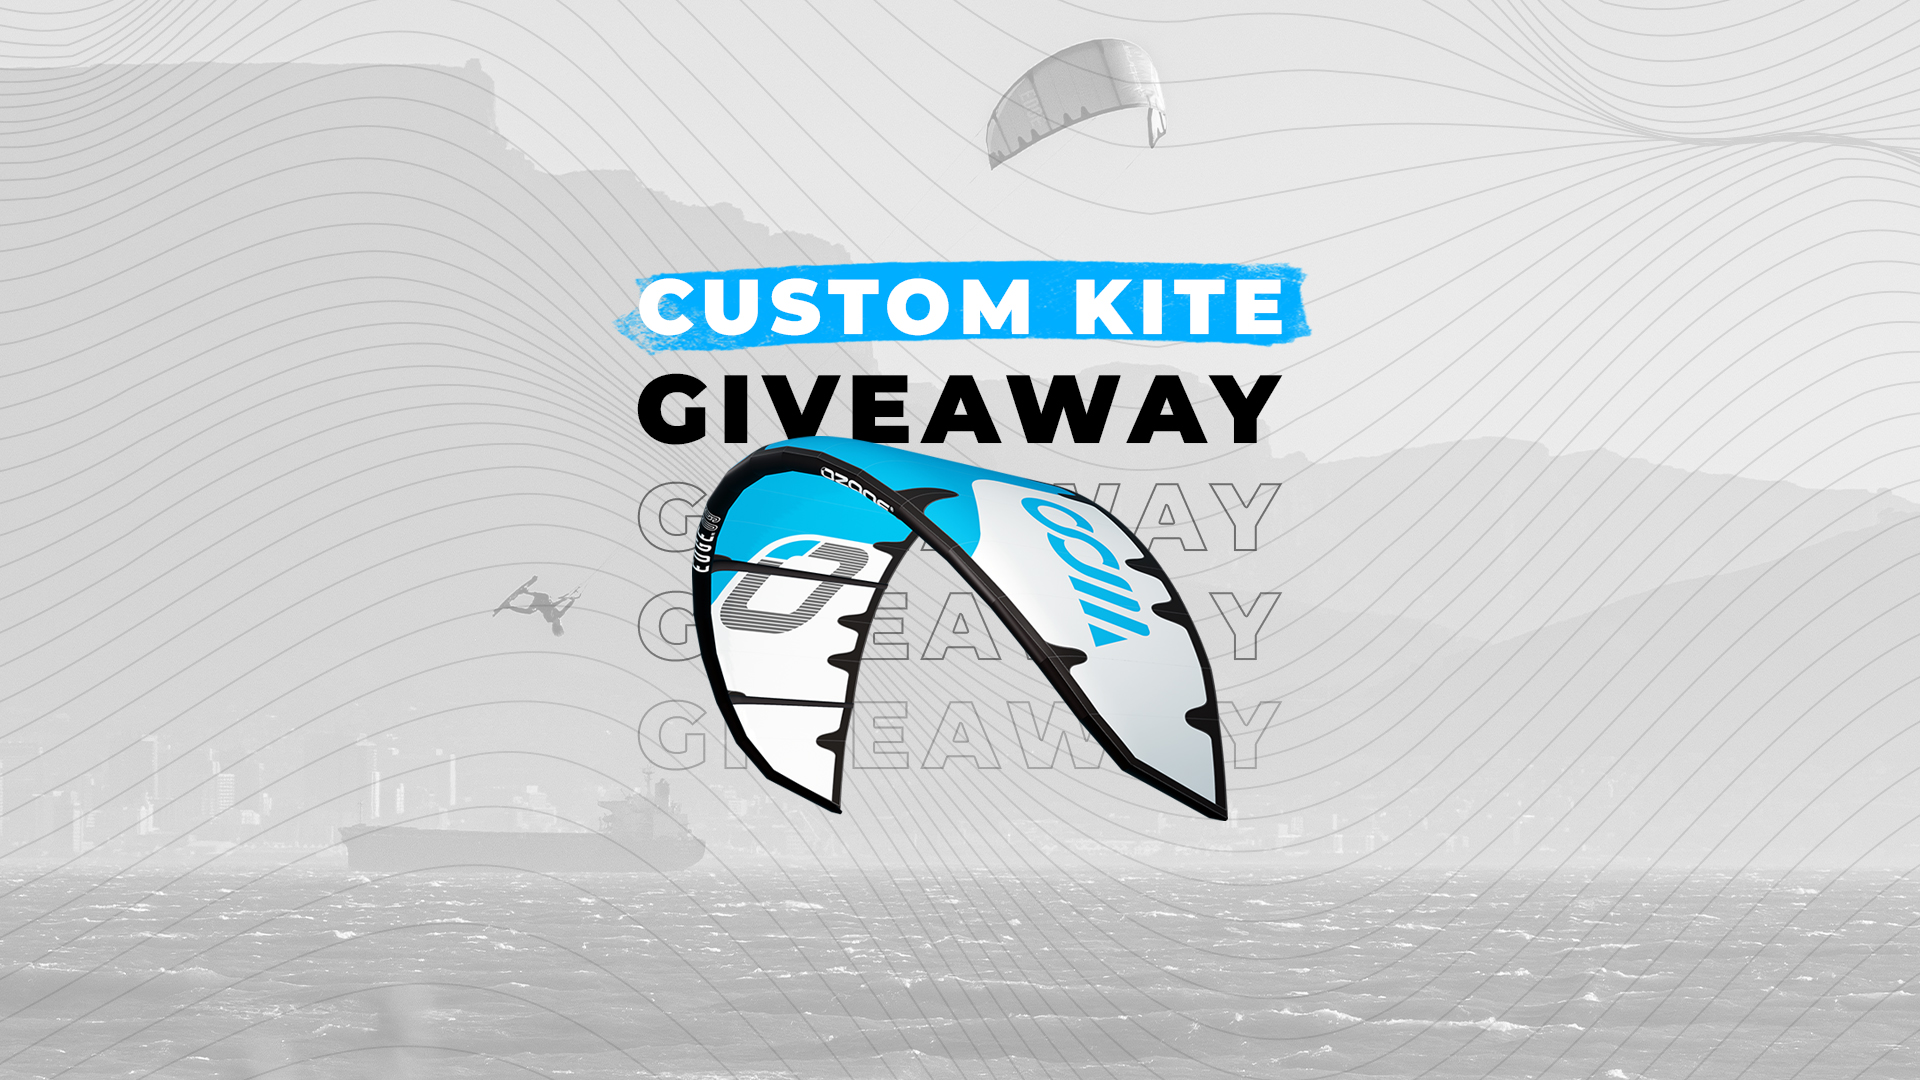 Ozone x WOO custom kite giveaway